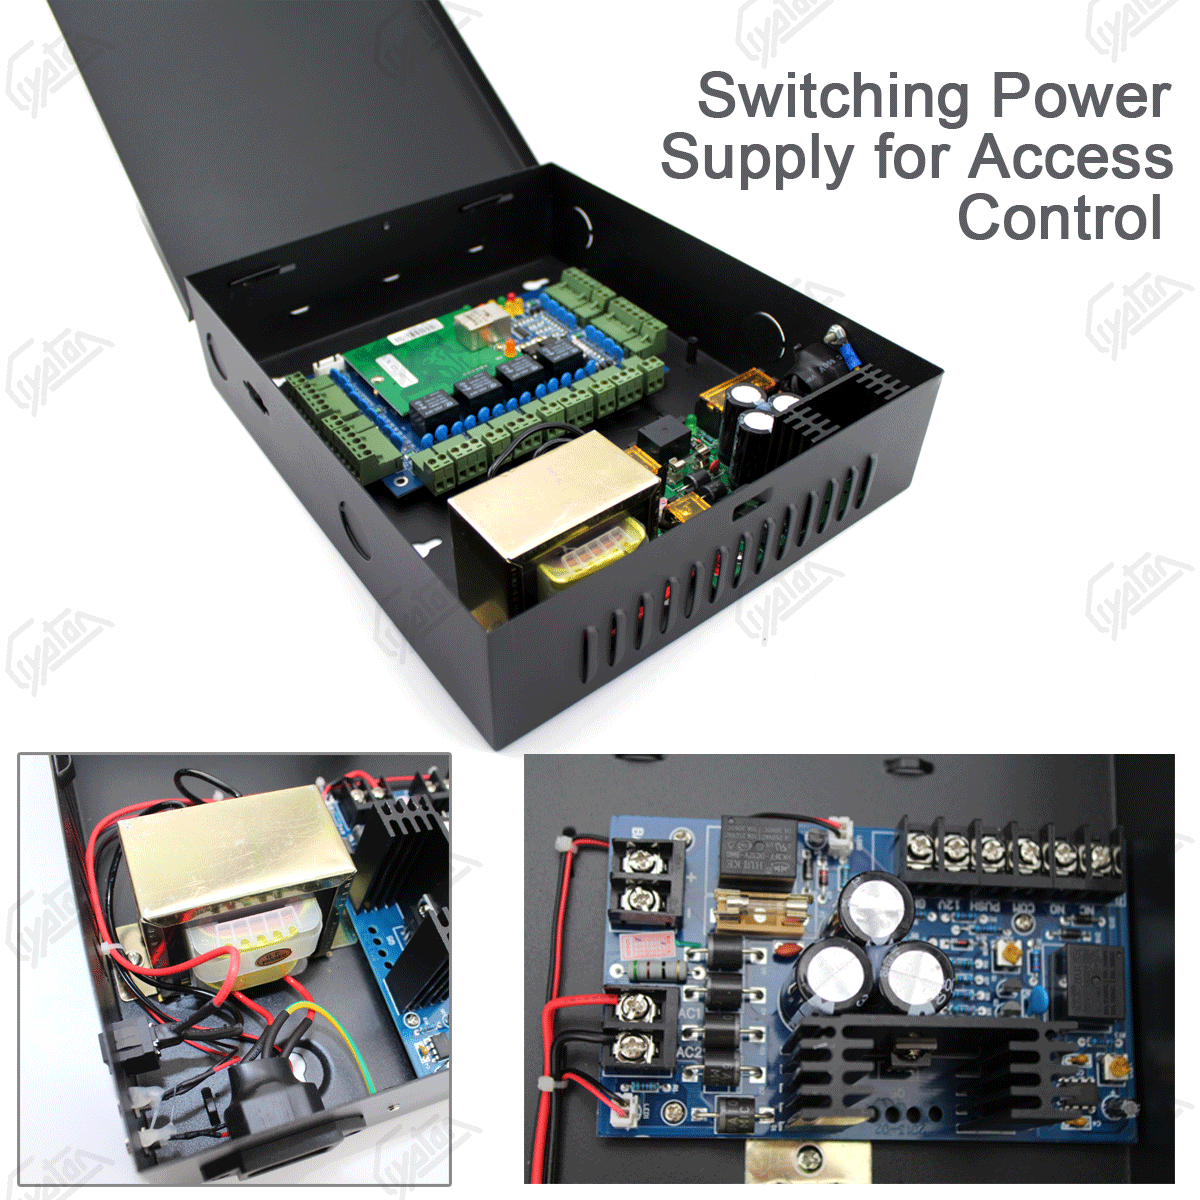 Unidad de fuente de alimentación con conexión de respaldo de batería para control de acceso.jpg